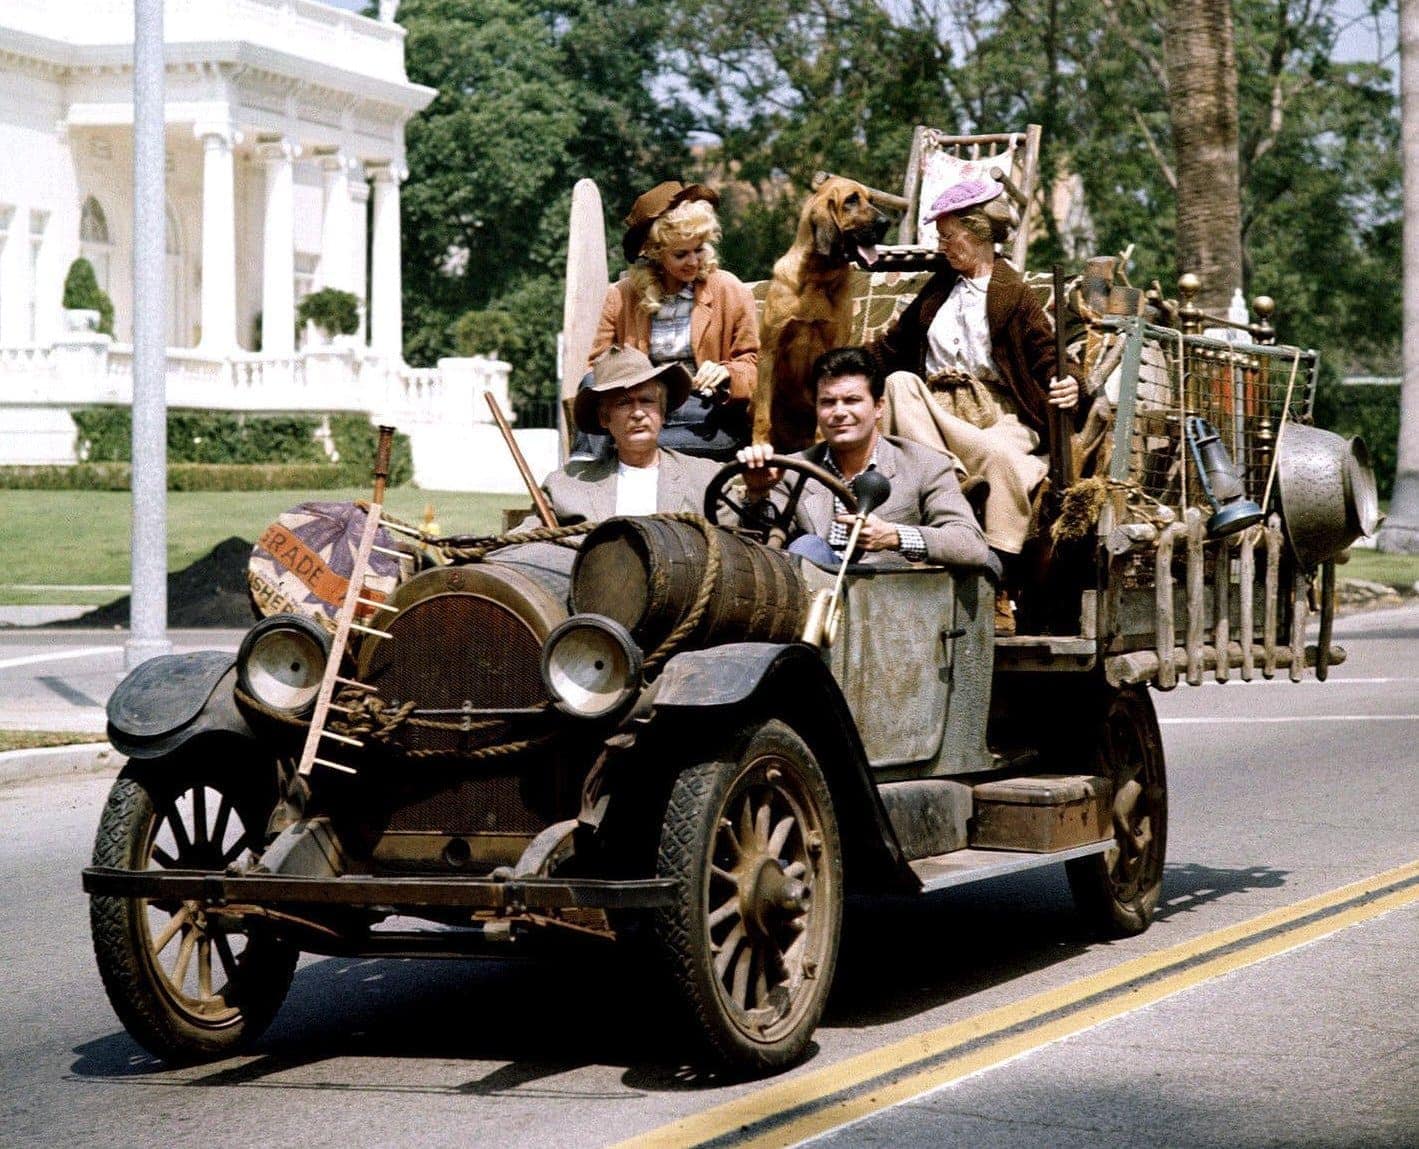 Beverly-Hillbillies-Family-in-the-car.jpg